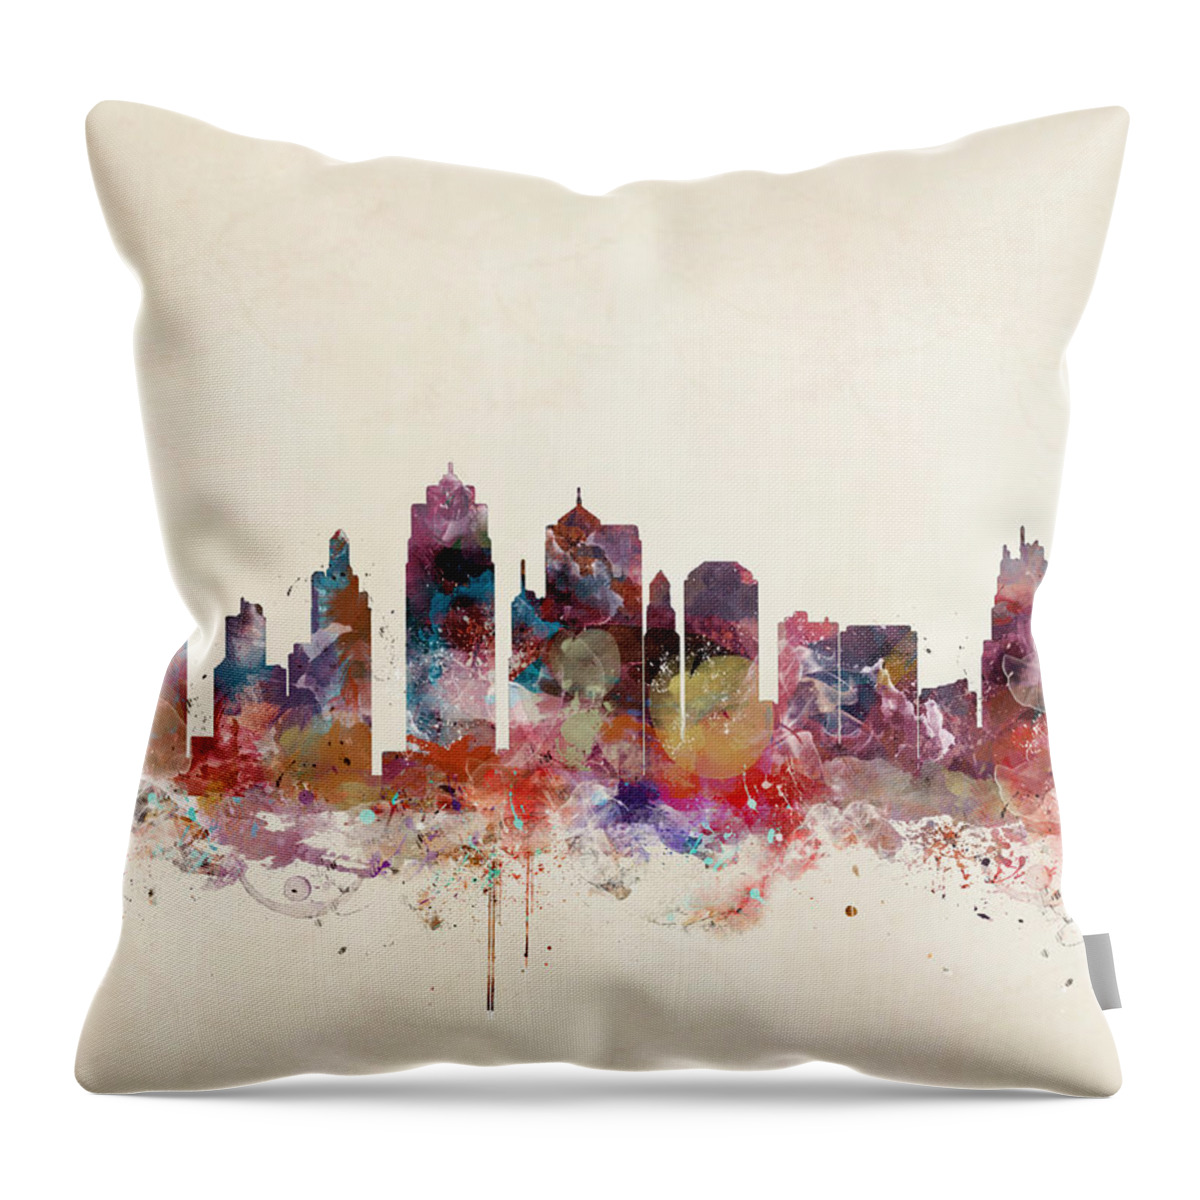 Kansas City Throw Pillow featuring the painting Kansas City Missouri Skyline by Bri Buckley